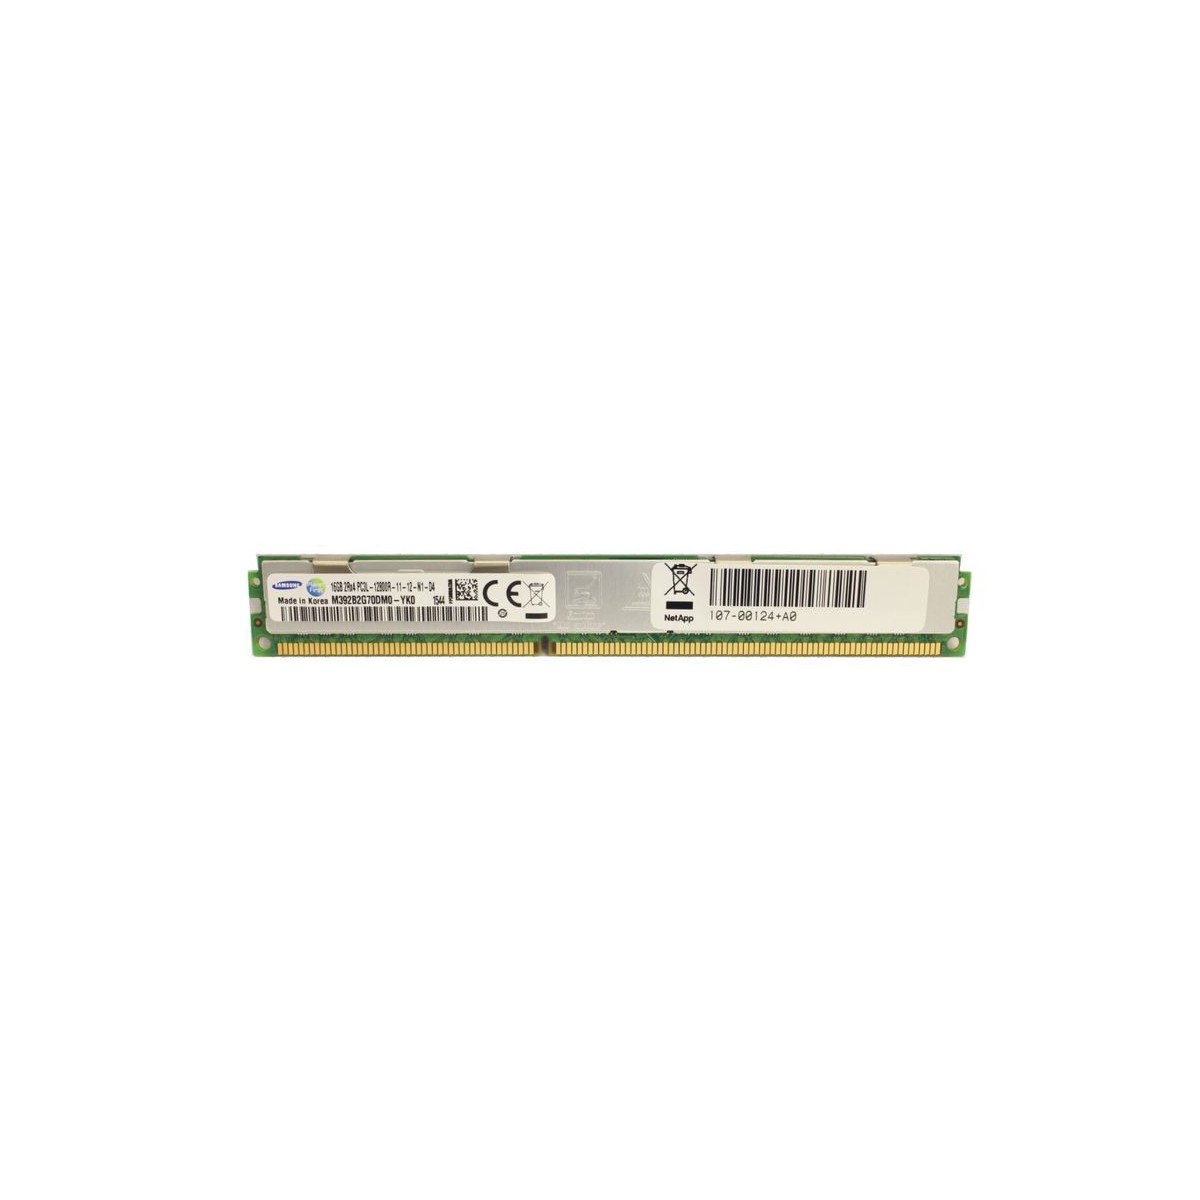 NETAPP 16GB PC3L-10600R ECC REG SLIM 107-00124+A0